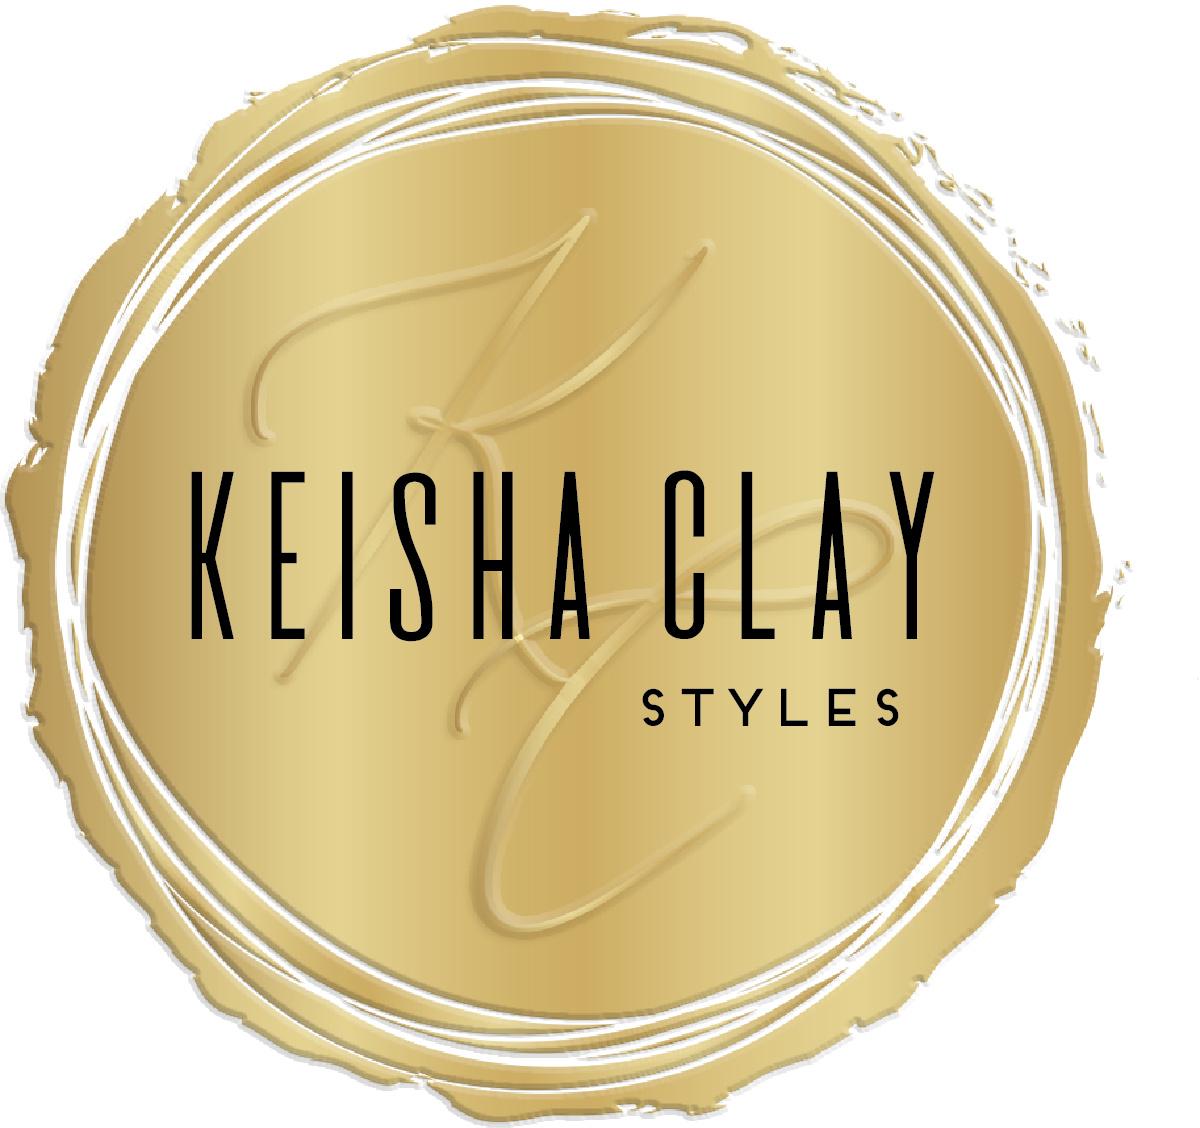 Keisha Clay Styles